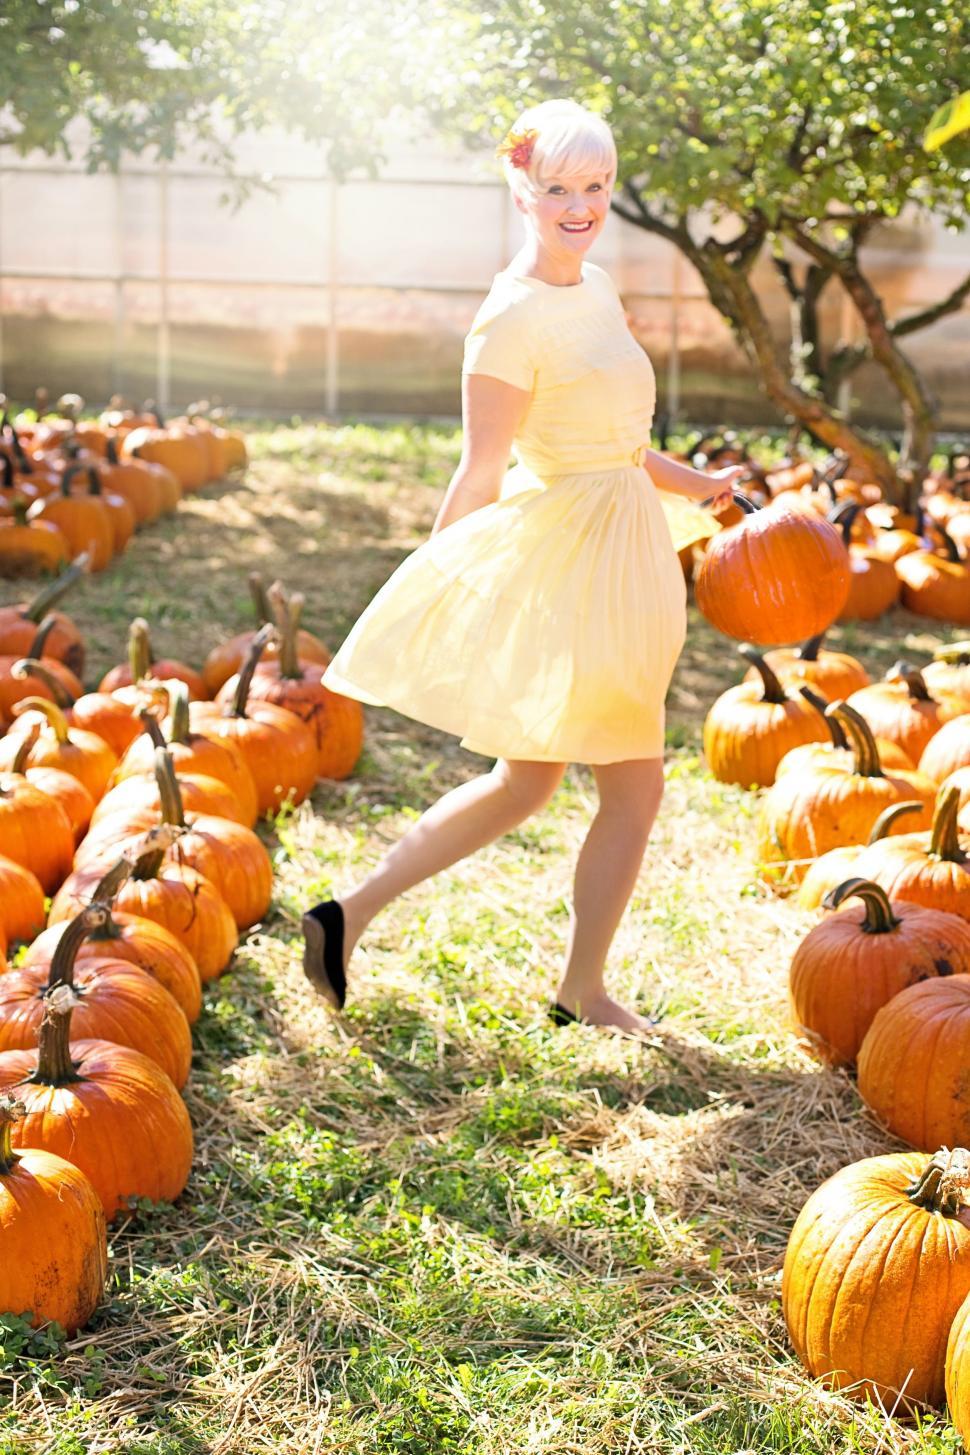 Free Image of Short Hair Woman With Pumpkins - Looking at camera  